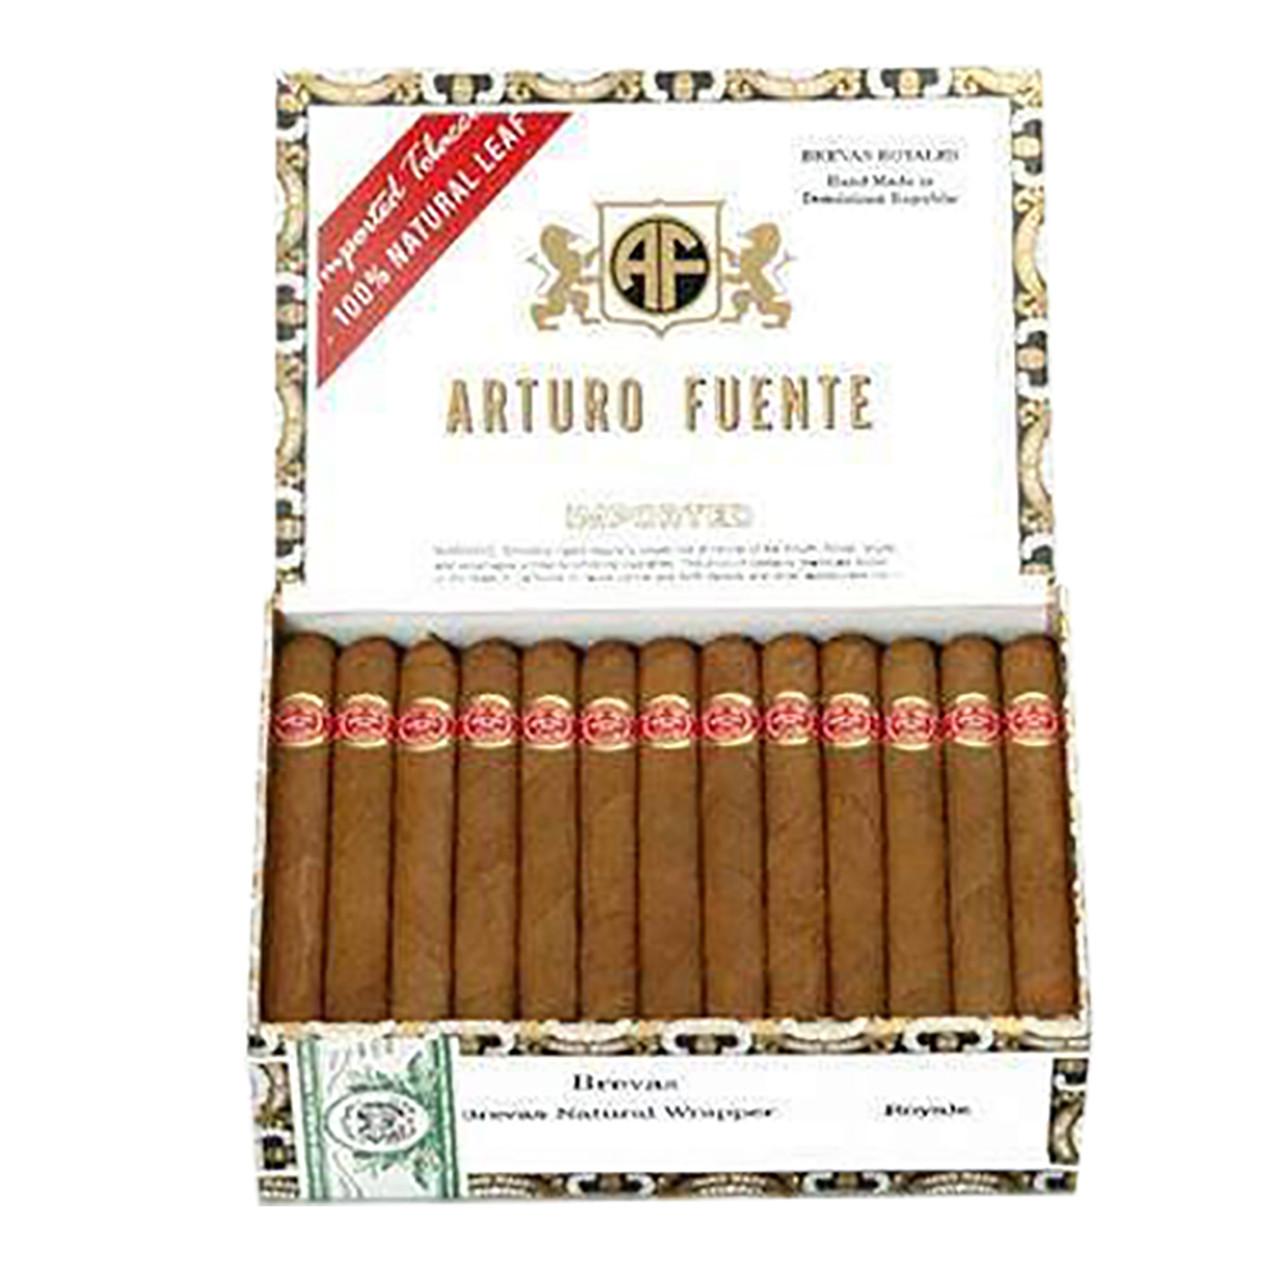 Arturo Fuentes Exquisitos, Empty cigar box